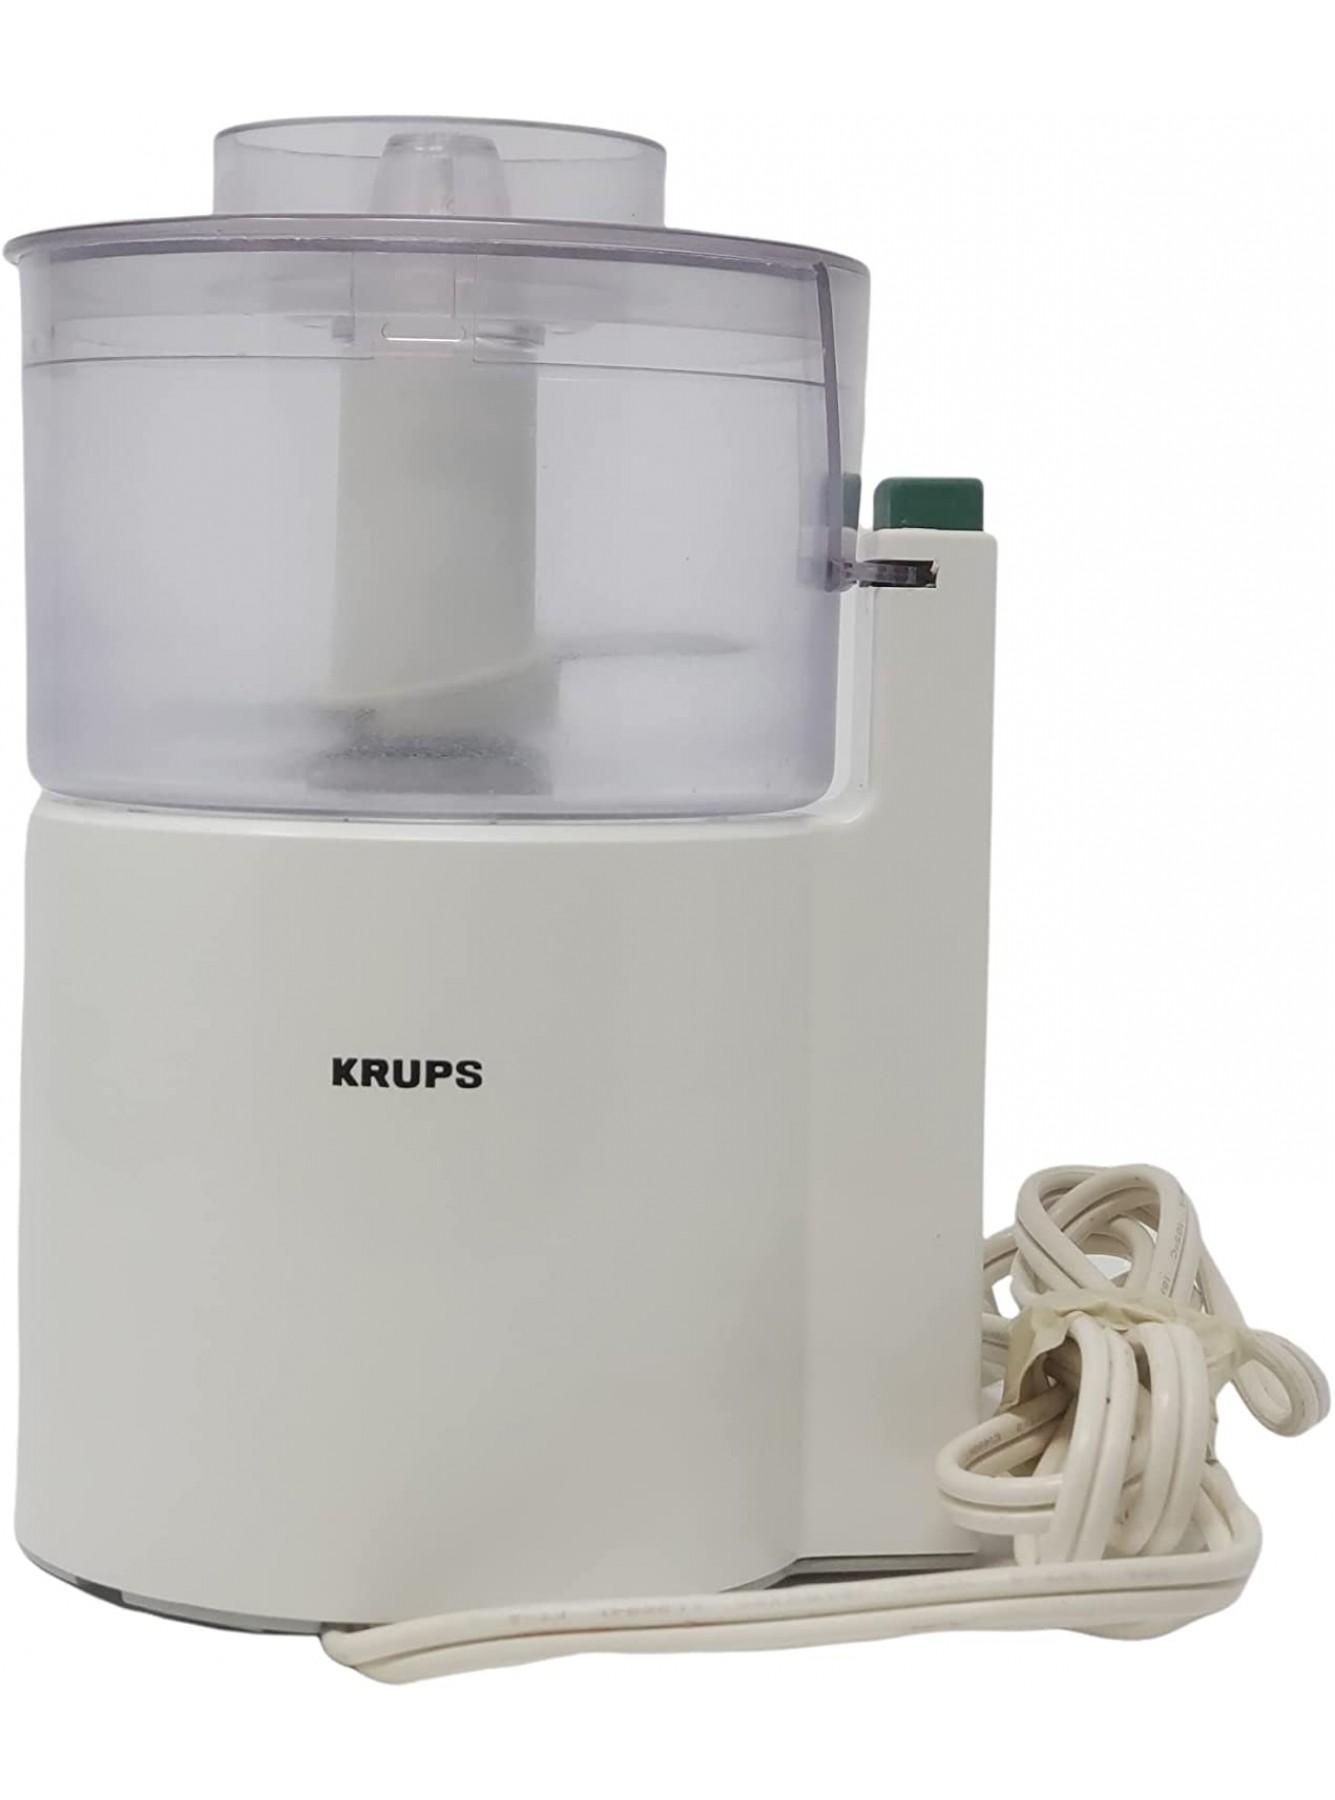 Krups Mini Pro 708 Small Food Processor B00886WM9U